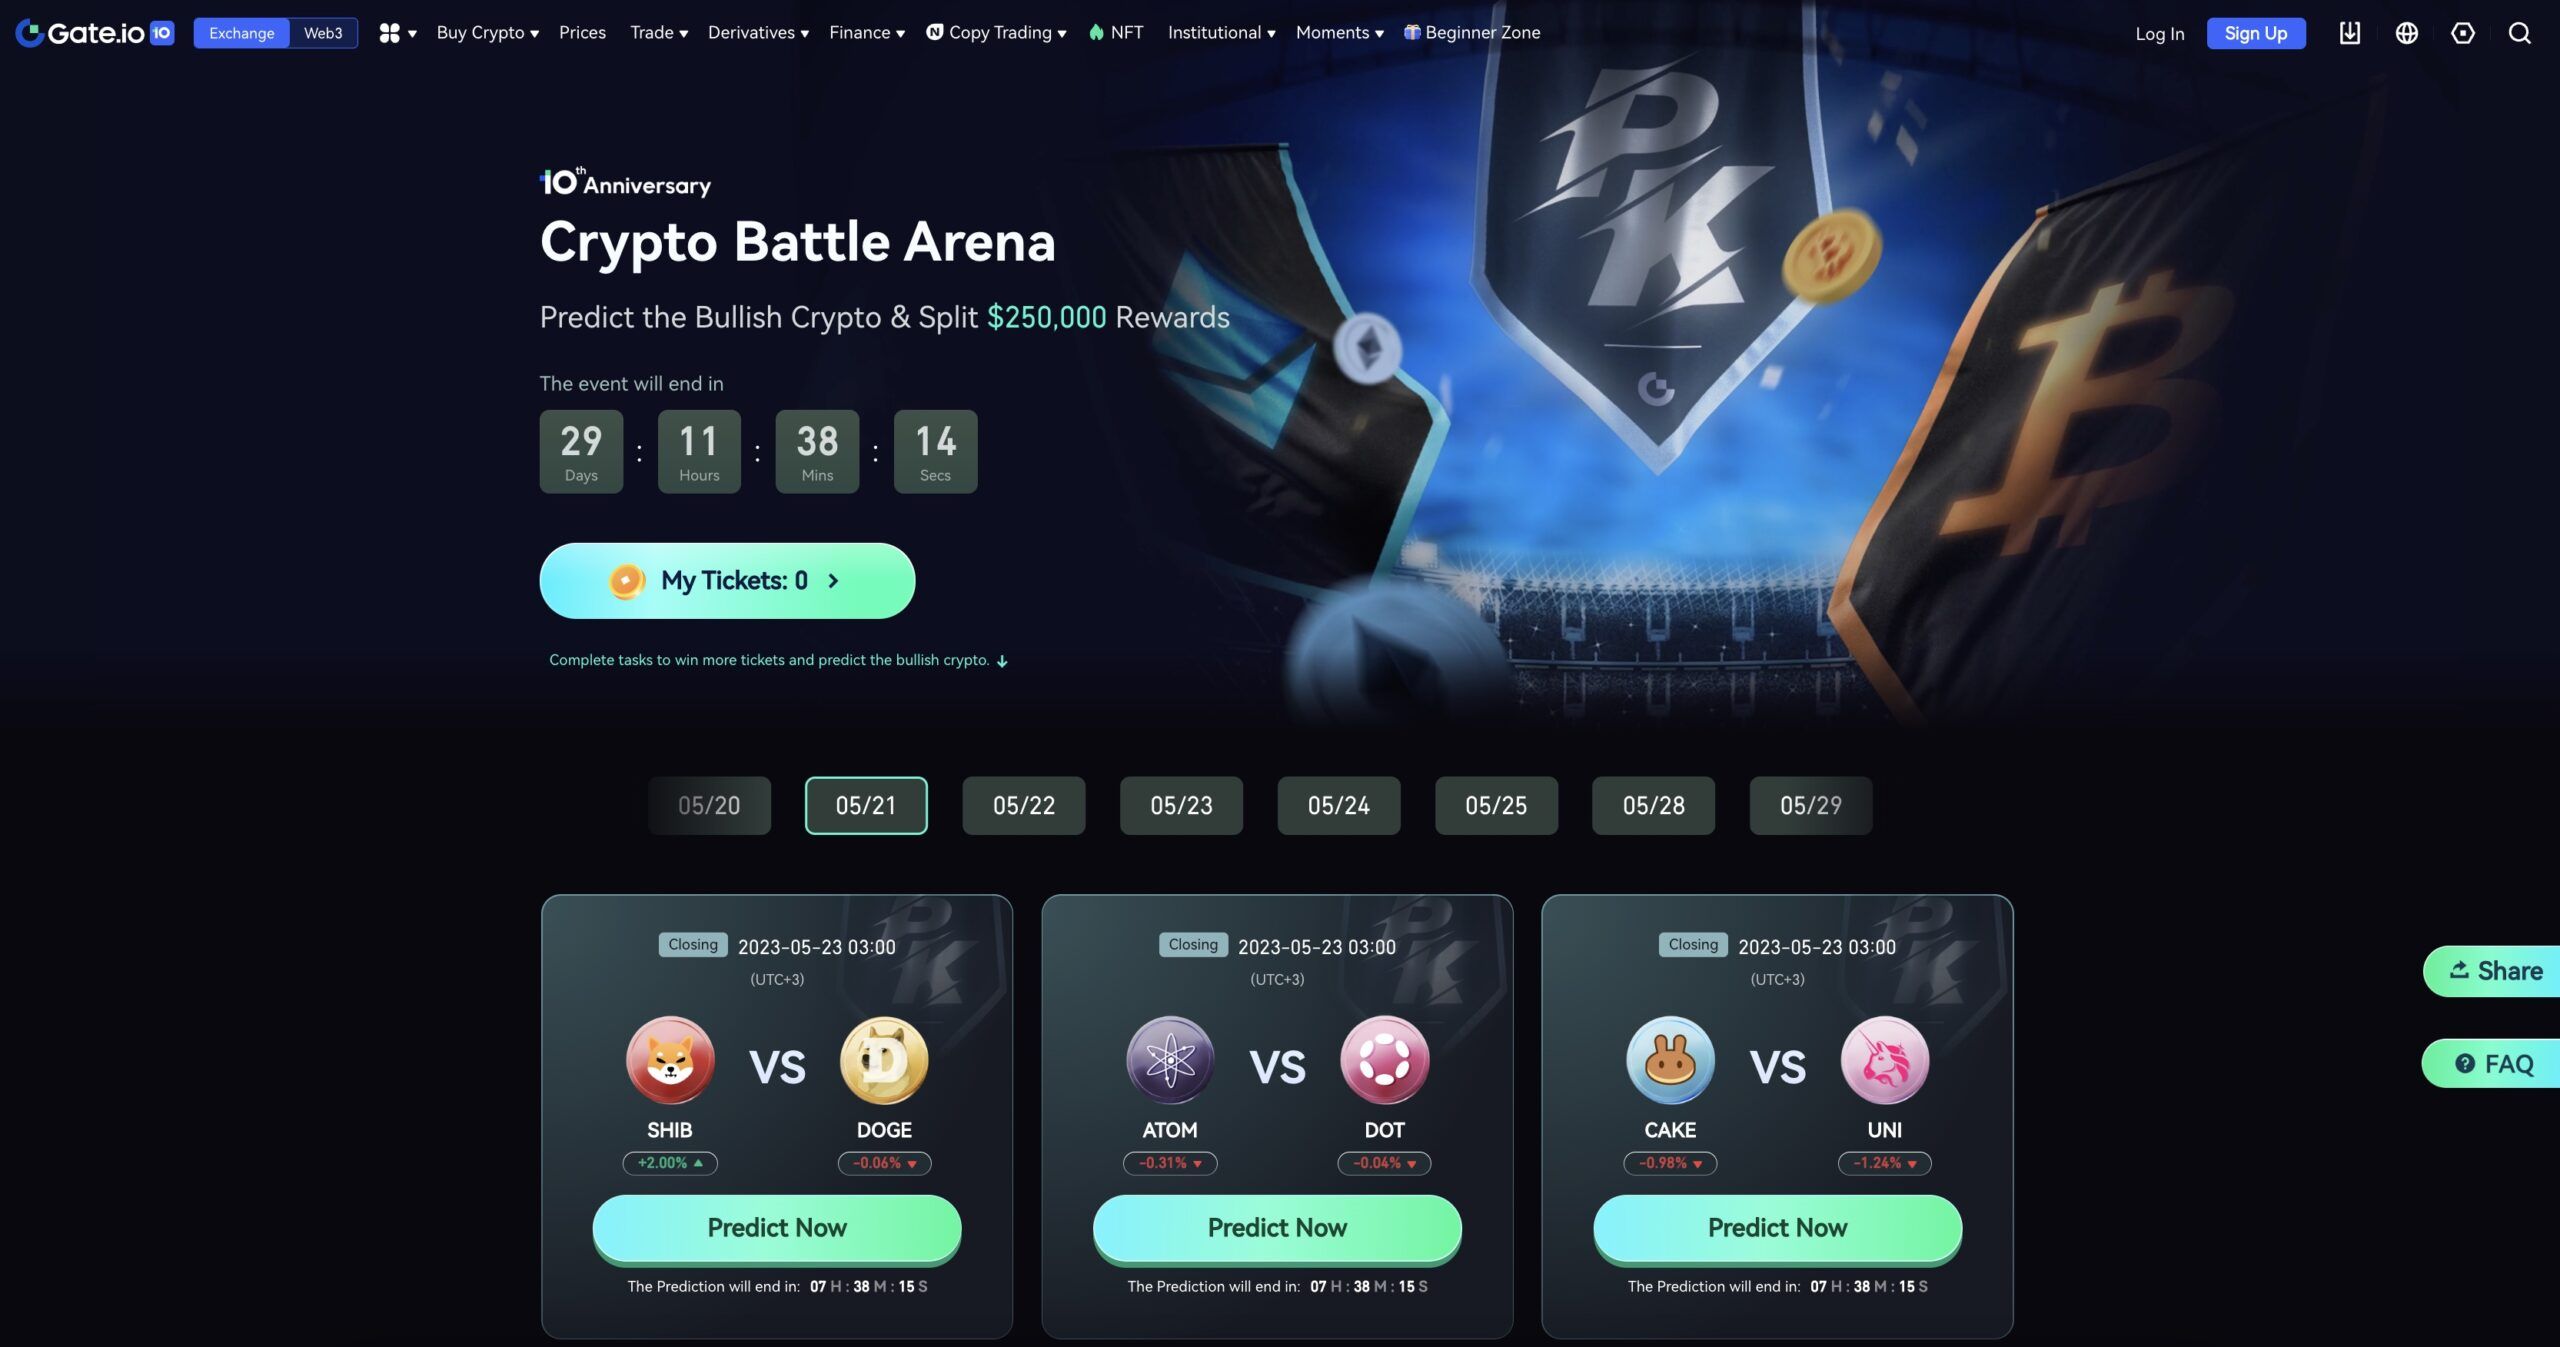 Crypto Battle Arena on Gate.io